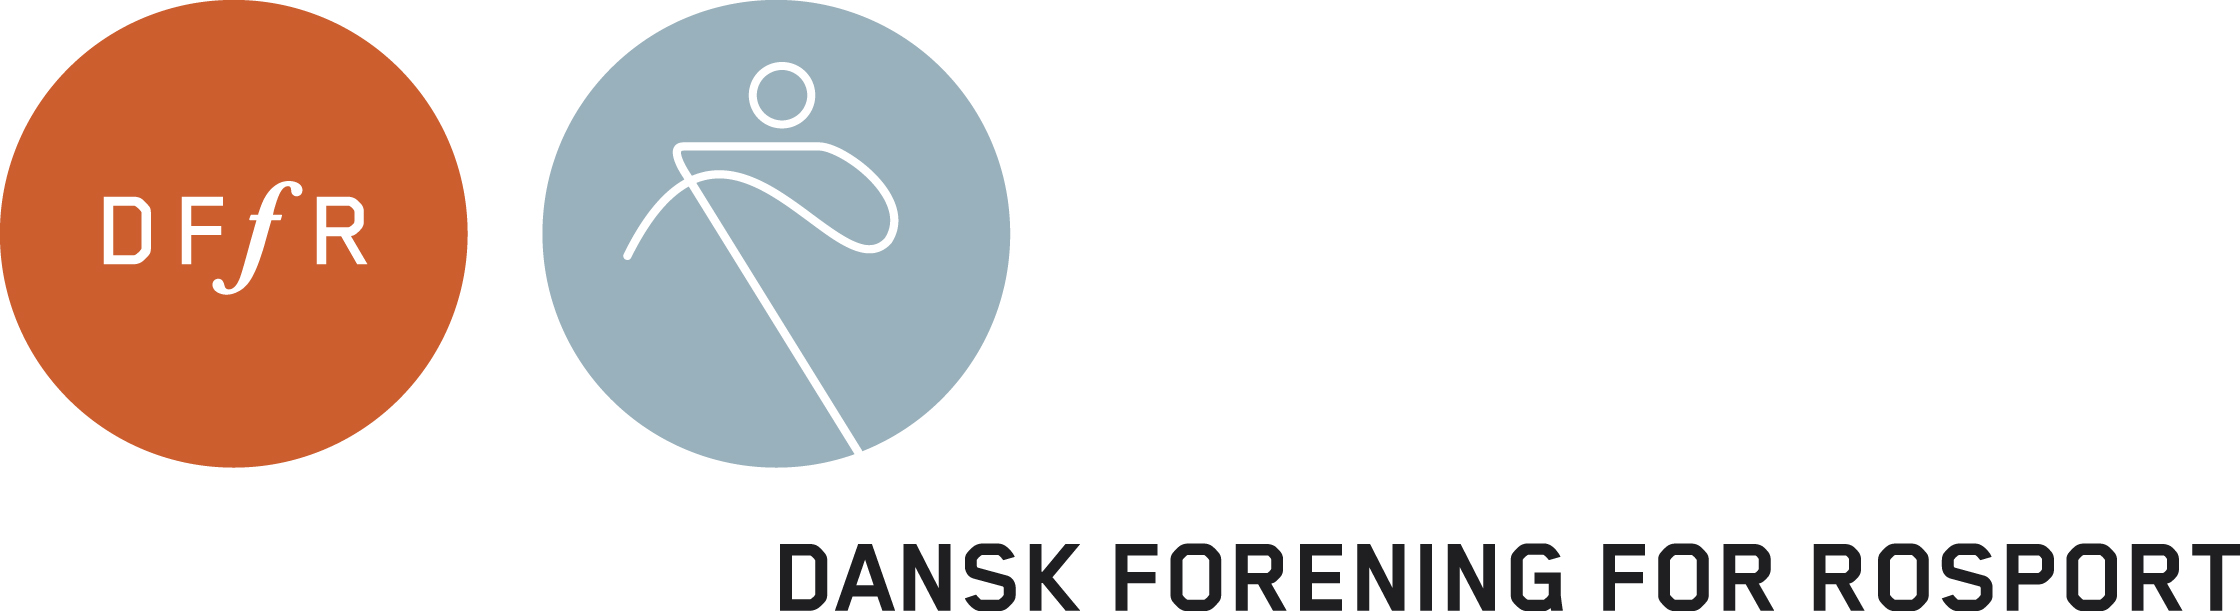 20140912 Dansk Forening for Rosport Referat Bestyrelsesmøde Hovedbestyrelsesmøde torsdag den 20. november kl. 17.00 i Rosportens Hus, Bagsværd.